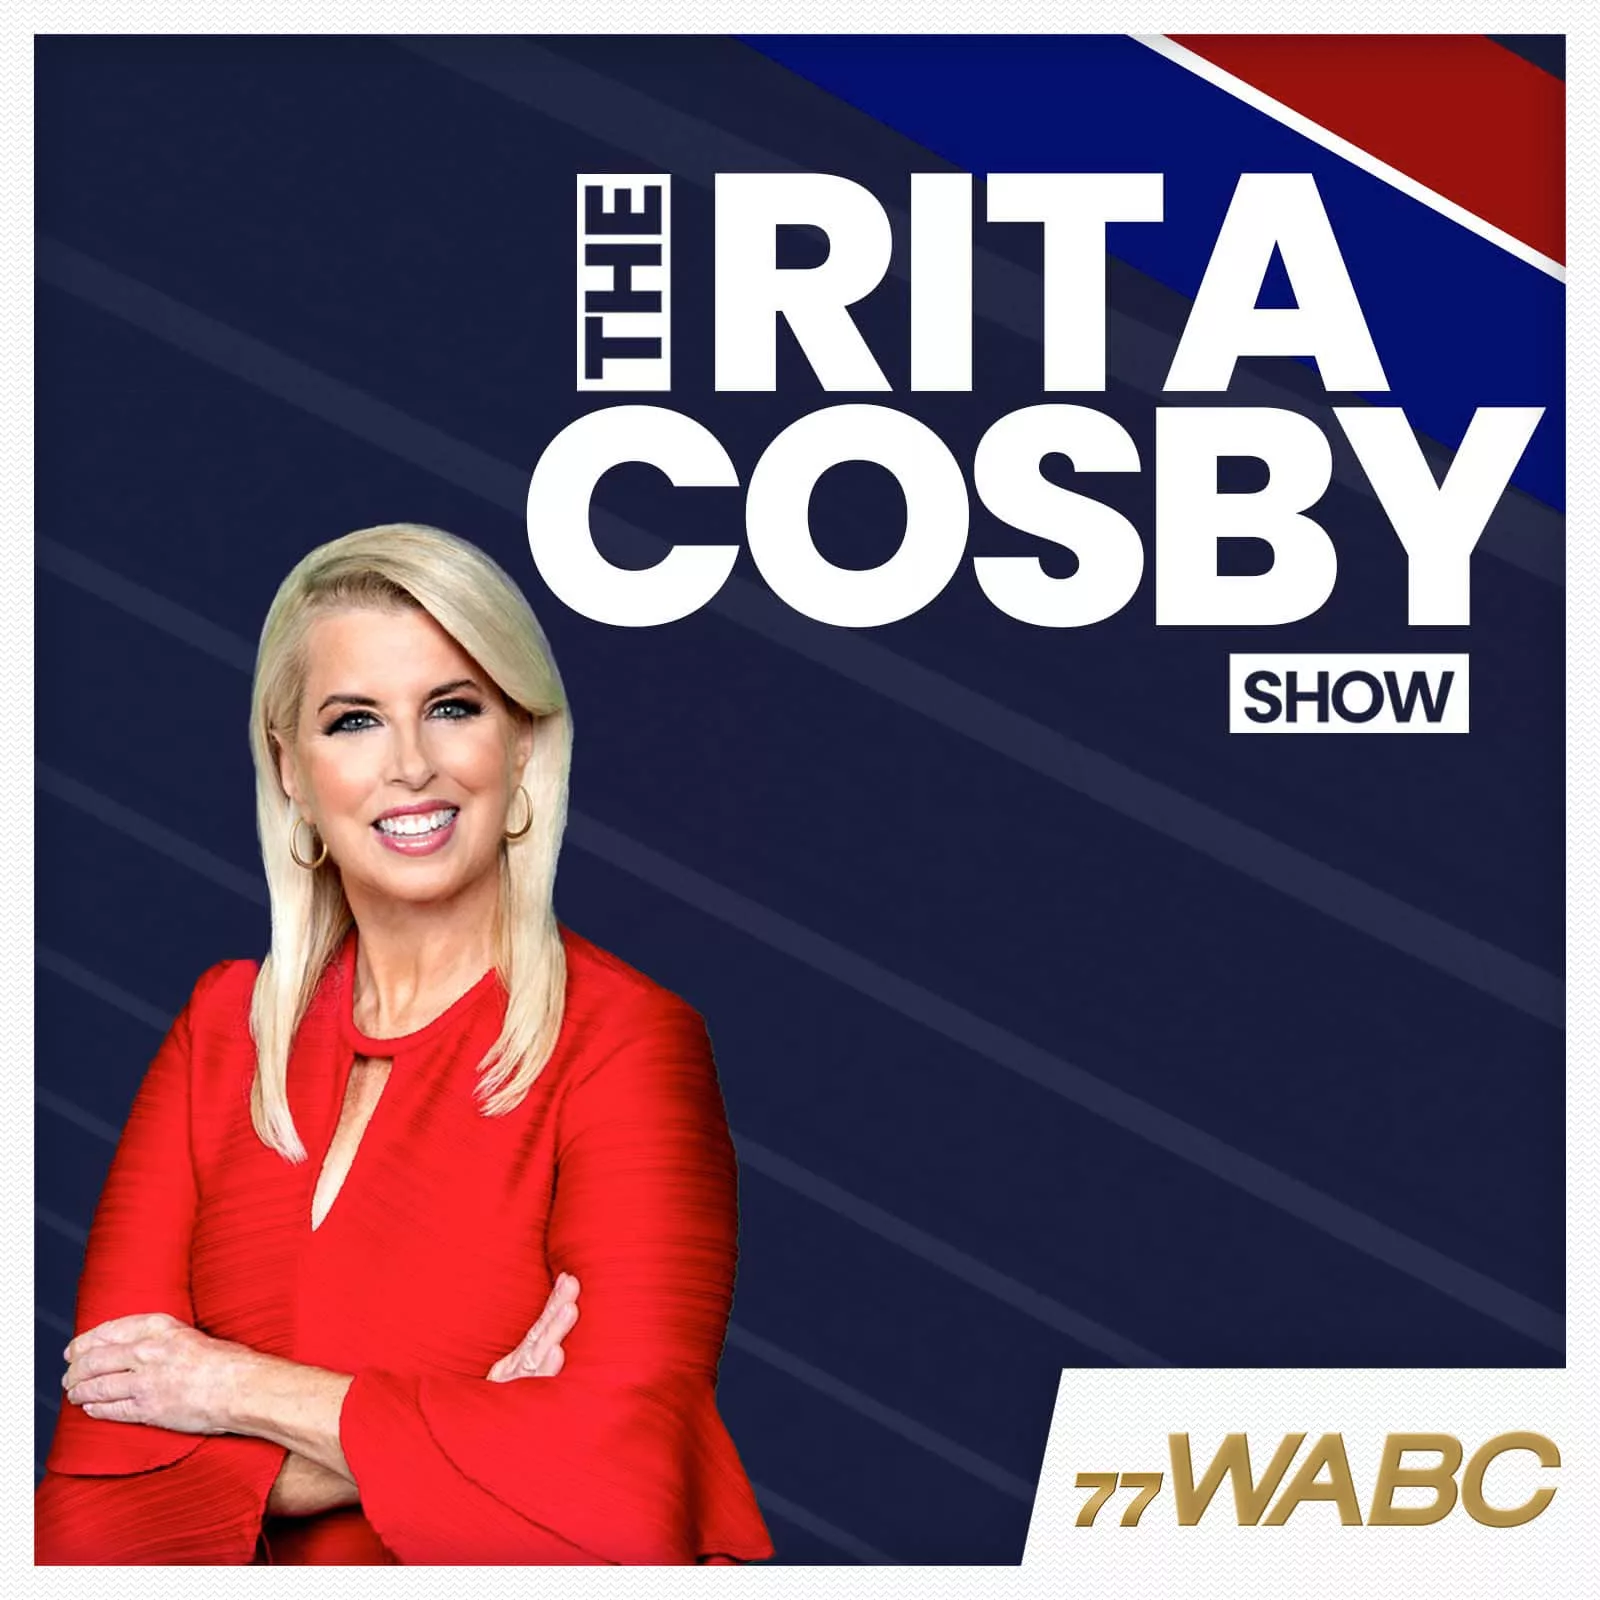 rita-cosby-podcast-new-logo271755